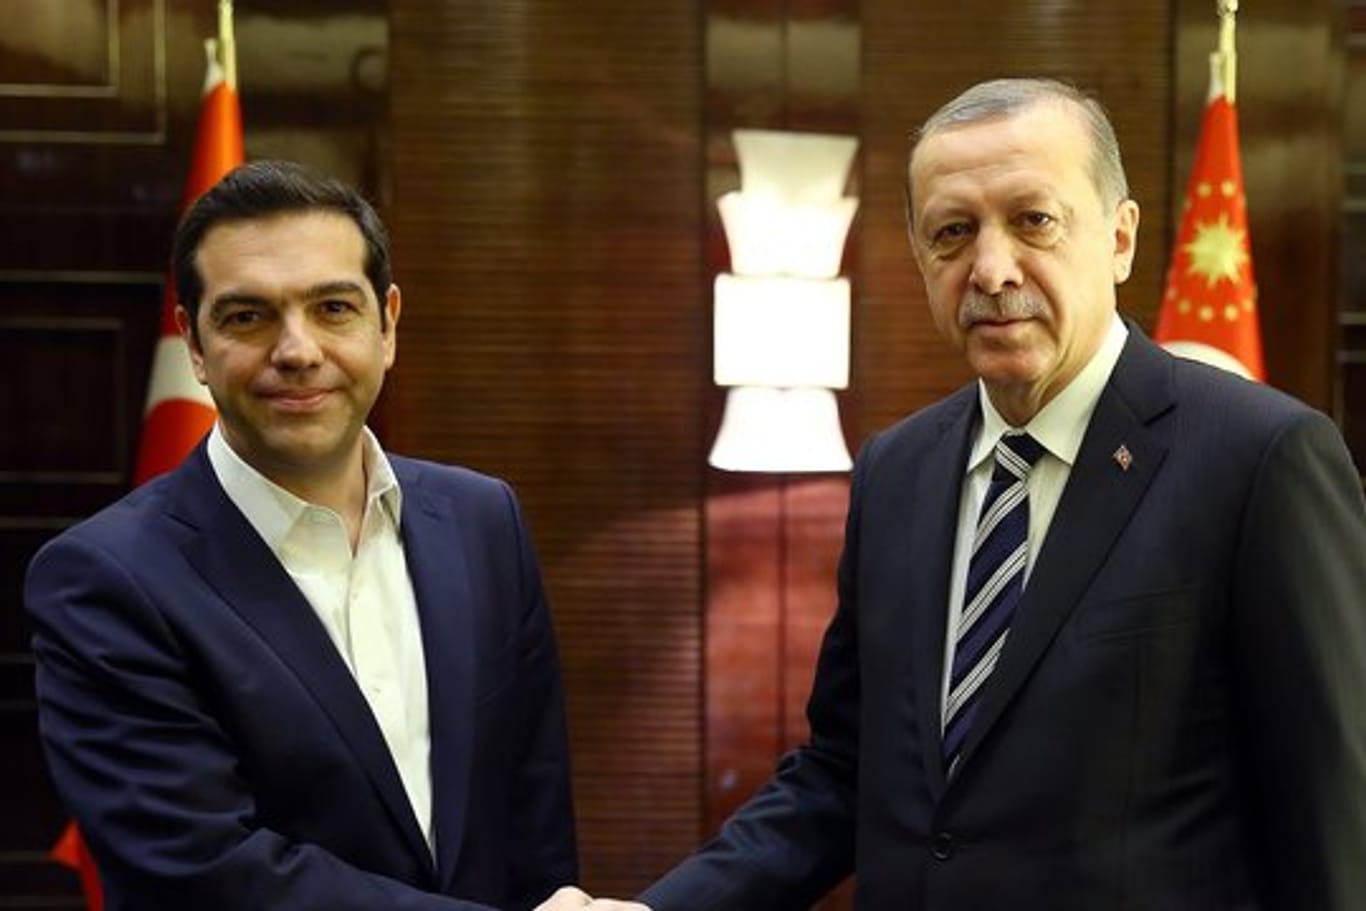 Kommen in Athen zusammen: der griechische Ministerpräsident Alexis Tsipras (l) und der türkische Präsident Recep Tayyip Erdogan.